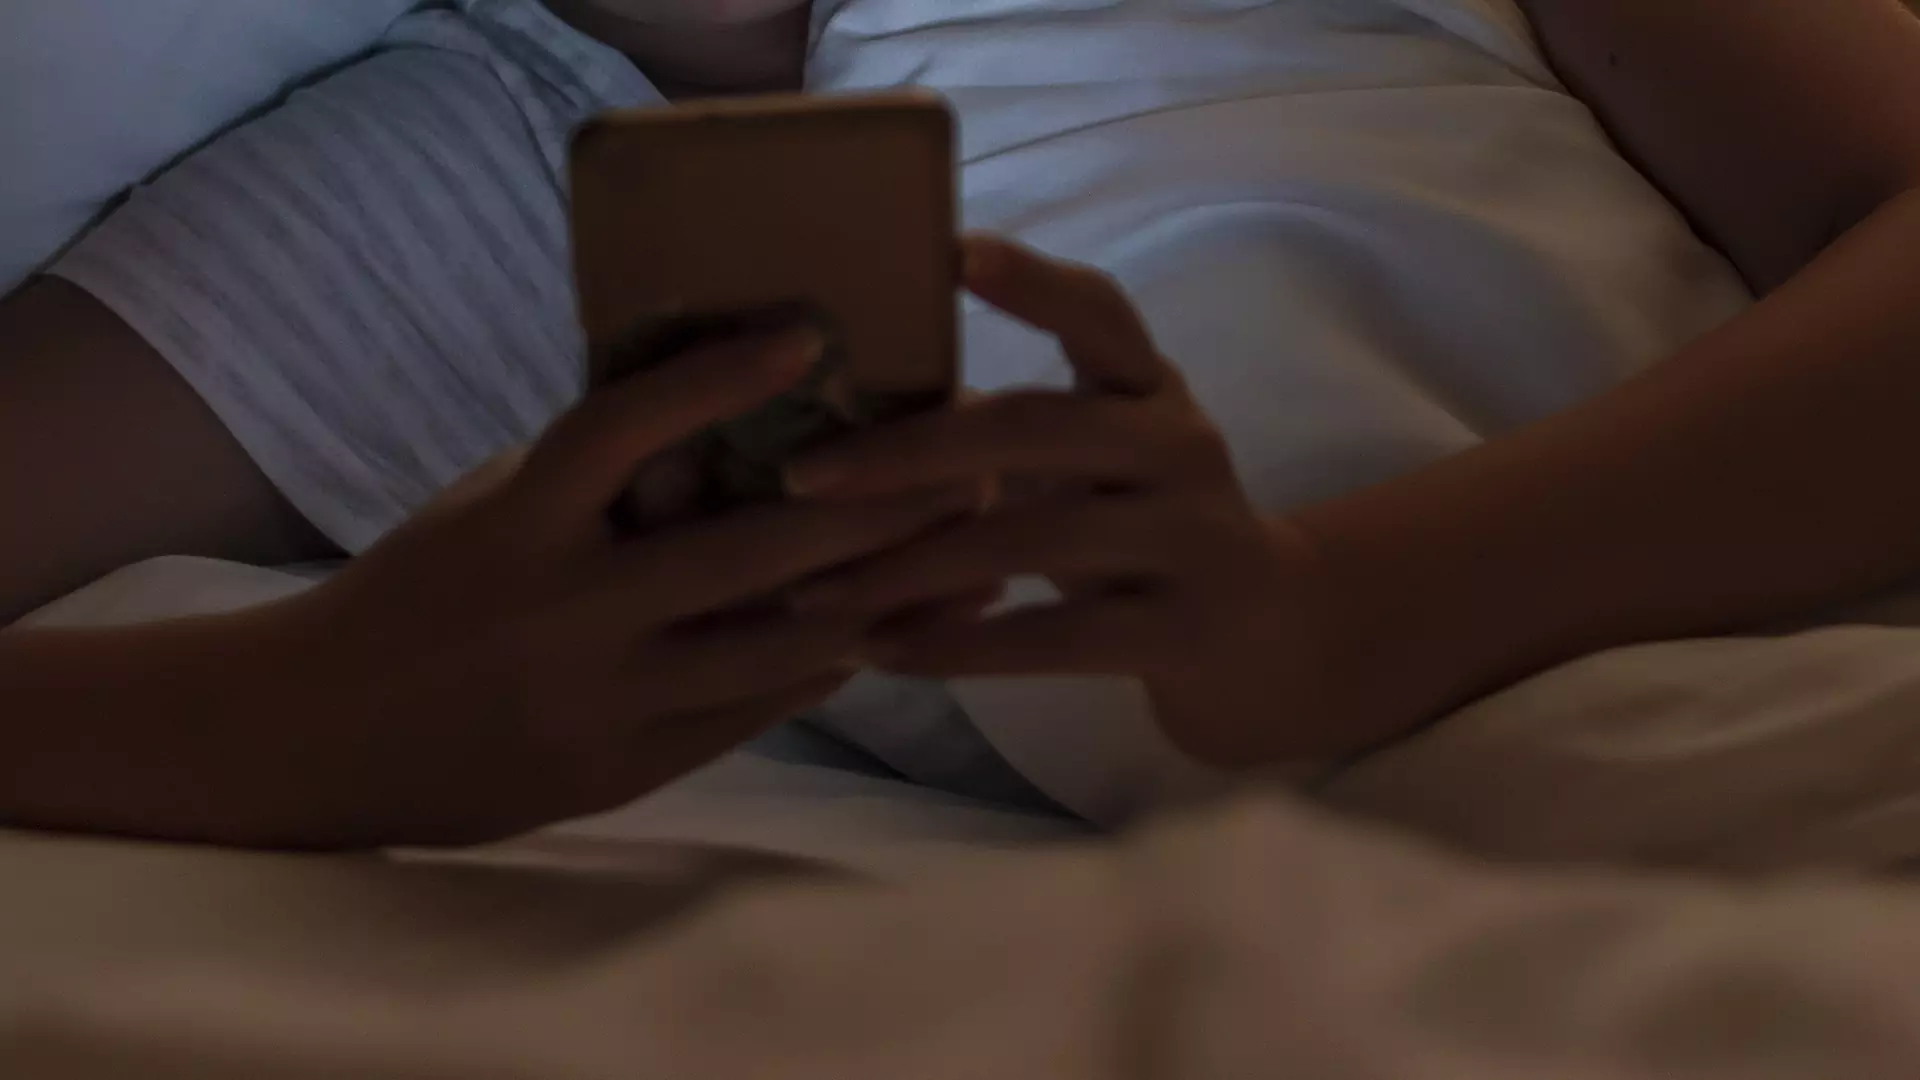 Czym jest sexting? 8 rad jak uprawiać go bezpiecznie i bez obciachu